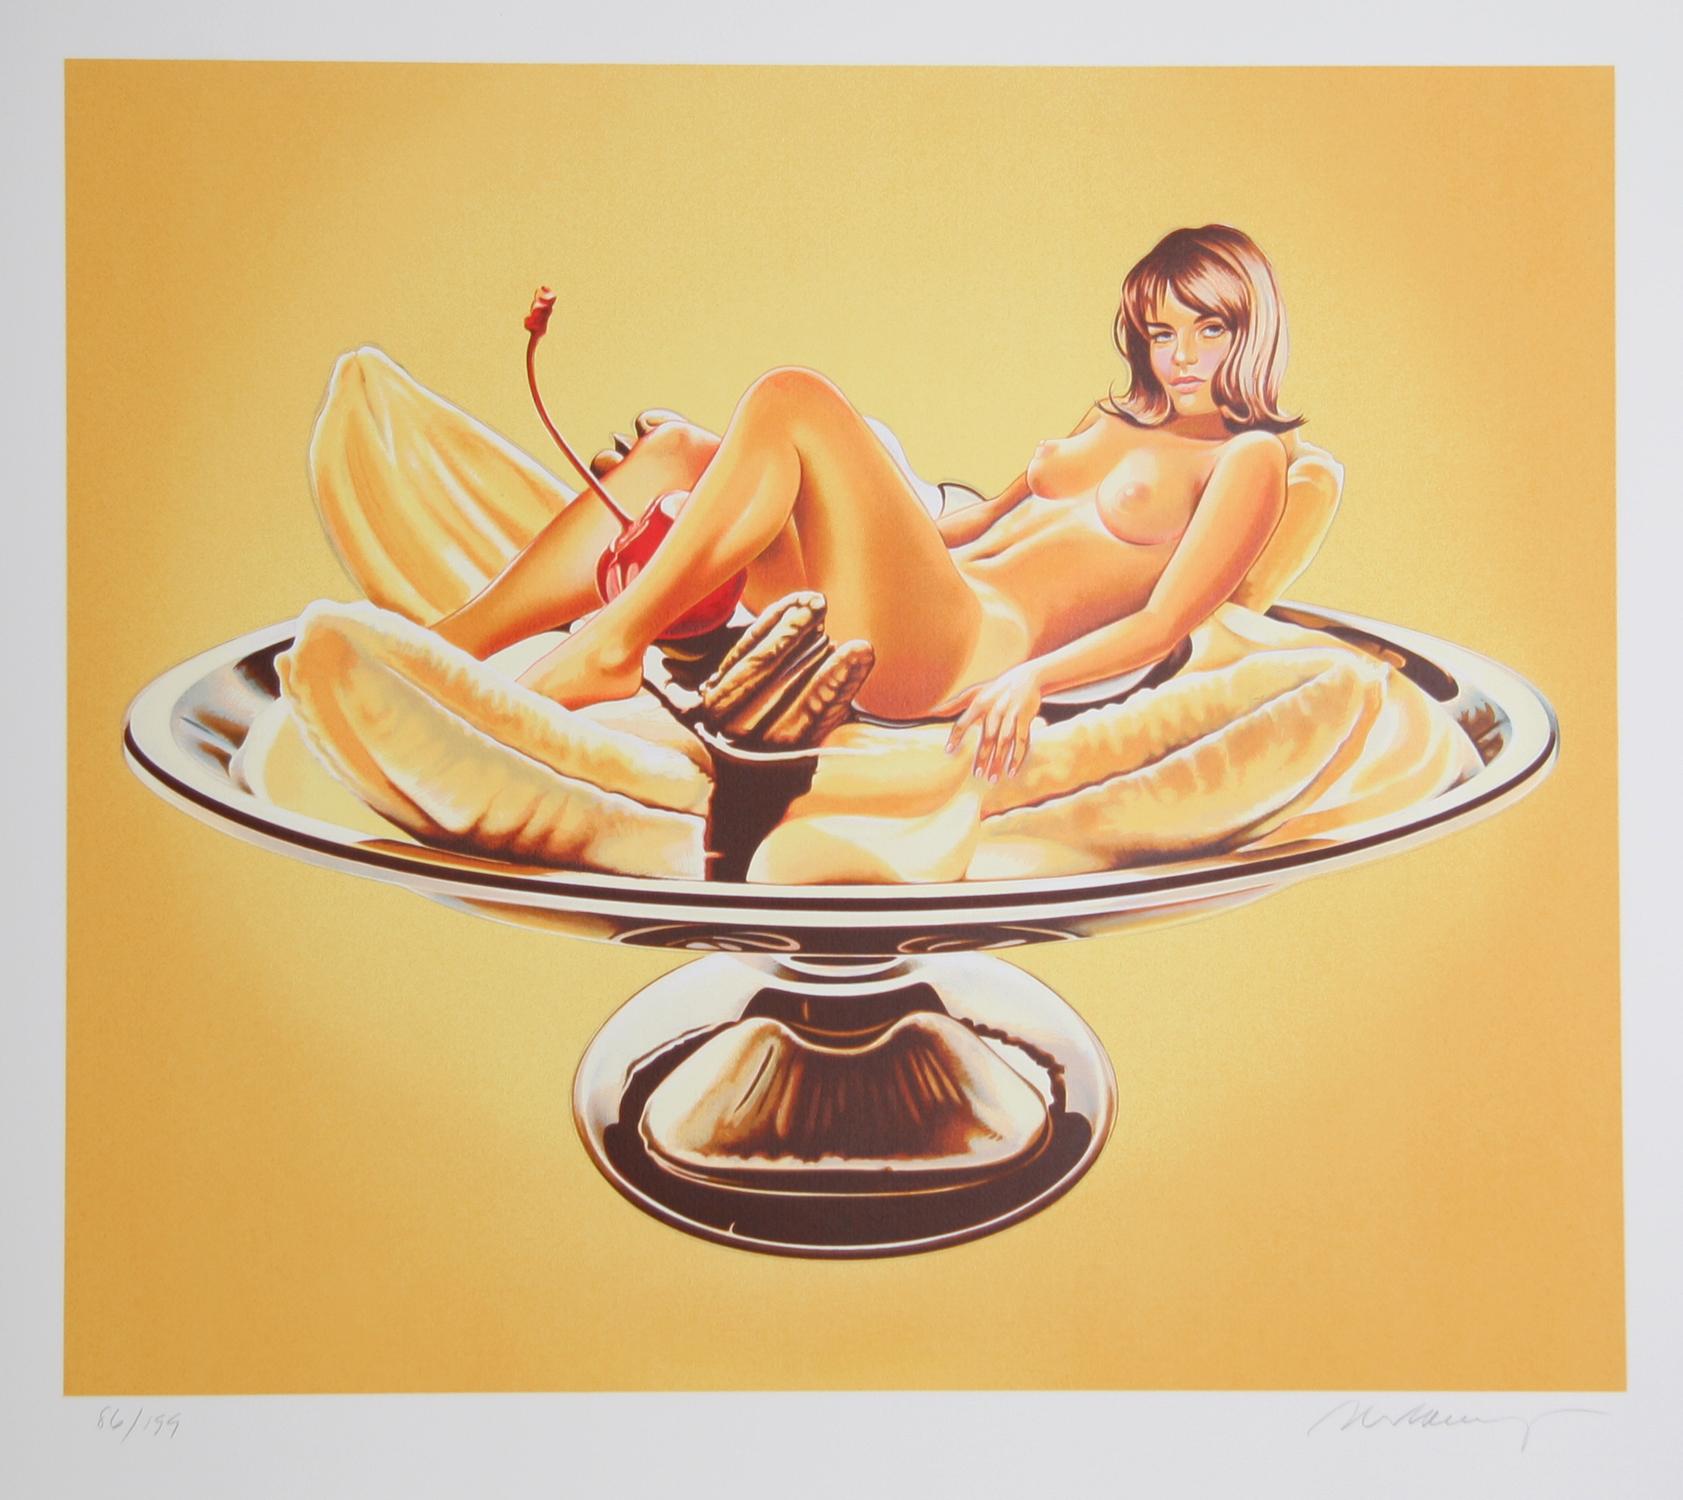 Künstler: Mel Ramos, Amerikaner (1935 - 2018)
Titel: Bananensplit (Sally Duberson)
Jahr: 2000
Medium: Lithographie, mit Bleistift signiert und nummeriert 
Auflage: 199
Papierformat: 36 x 40 Zoll 